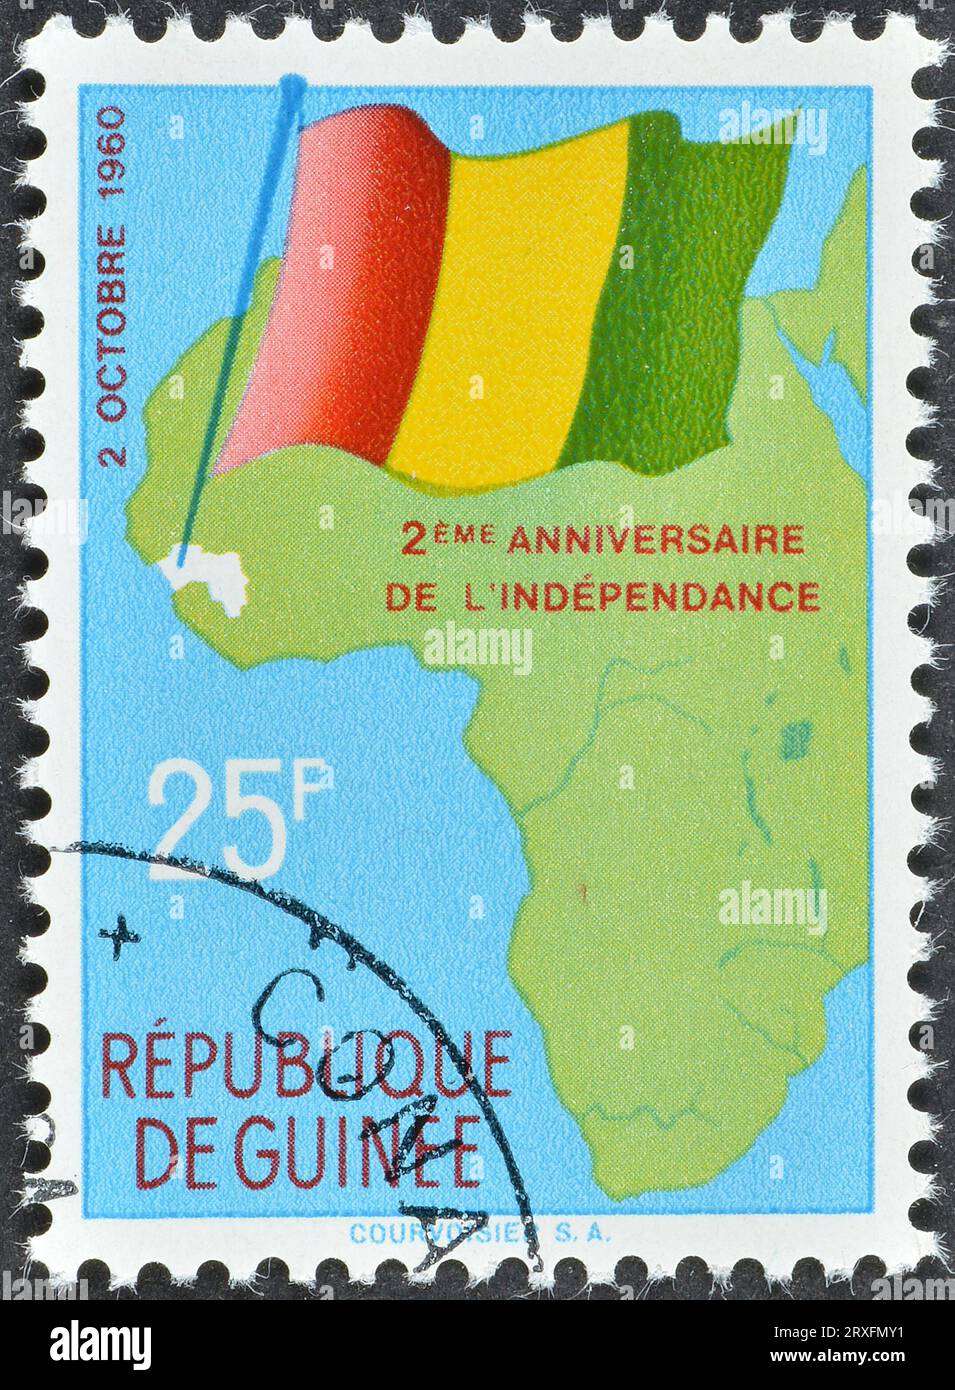 Timbre-poste annulé imprimé par la Guinée, qui montre carte de l'Afrique et drapeau national, indépendance, 2e anniversaire, vers 1960. Banque D'Images